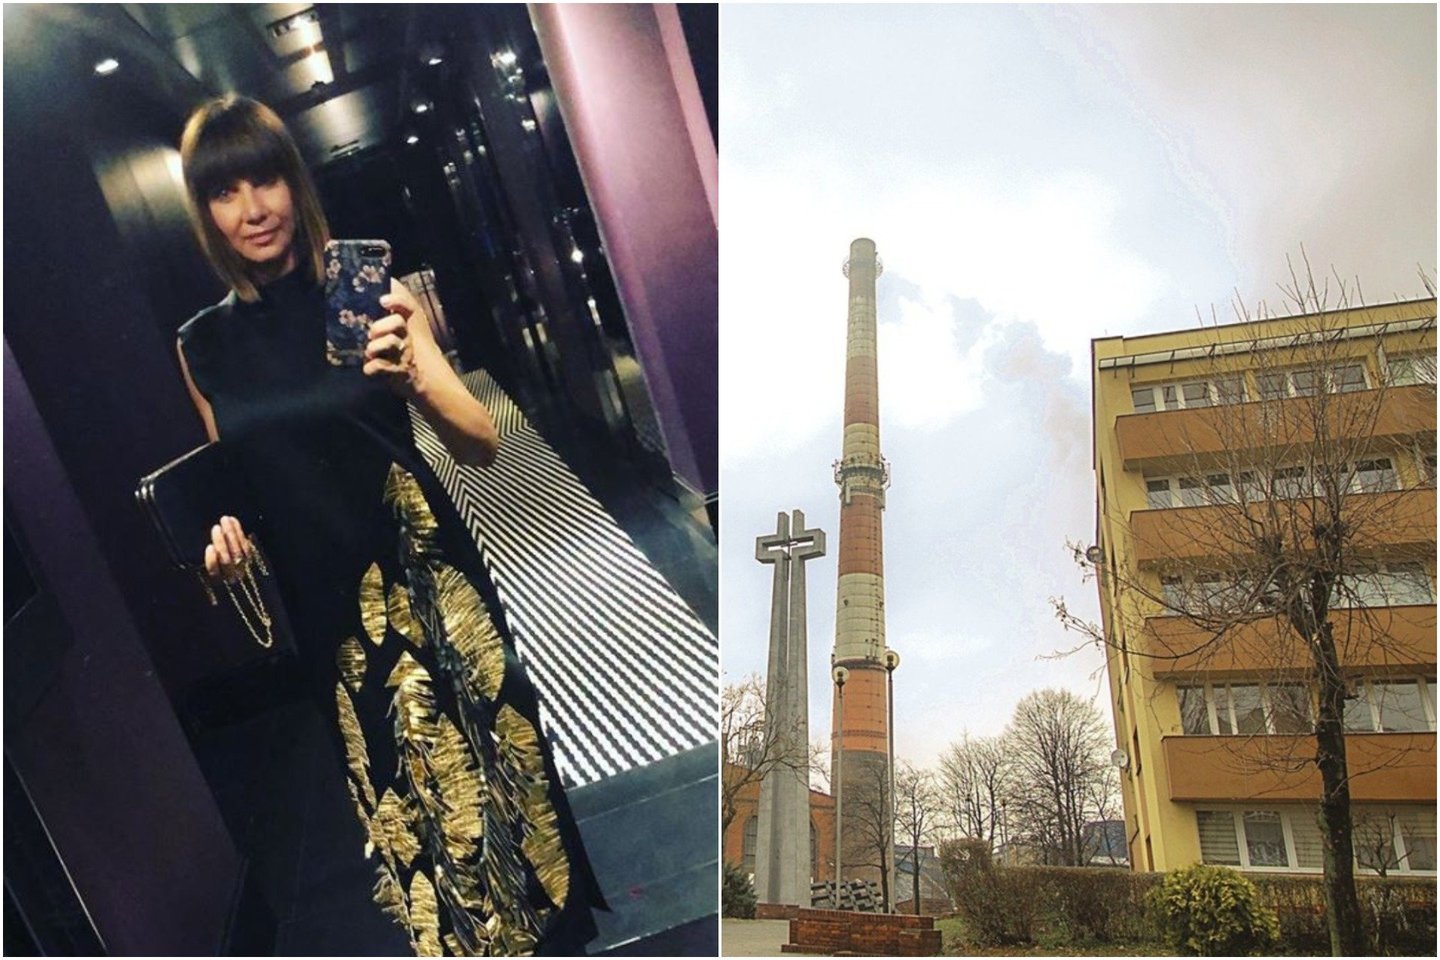  60-metė aktorė, puoselėjanti sveiką gyvenimo būdą, valstybę apkaltino trumpinant jos gyvenimą užterštu oru. Aktorė priminė, kad Lenkijoje oro tarša – bene didžiausia ES.<br> „Instagram“ ir „Scanpix“ nuotr.